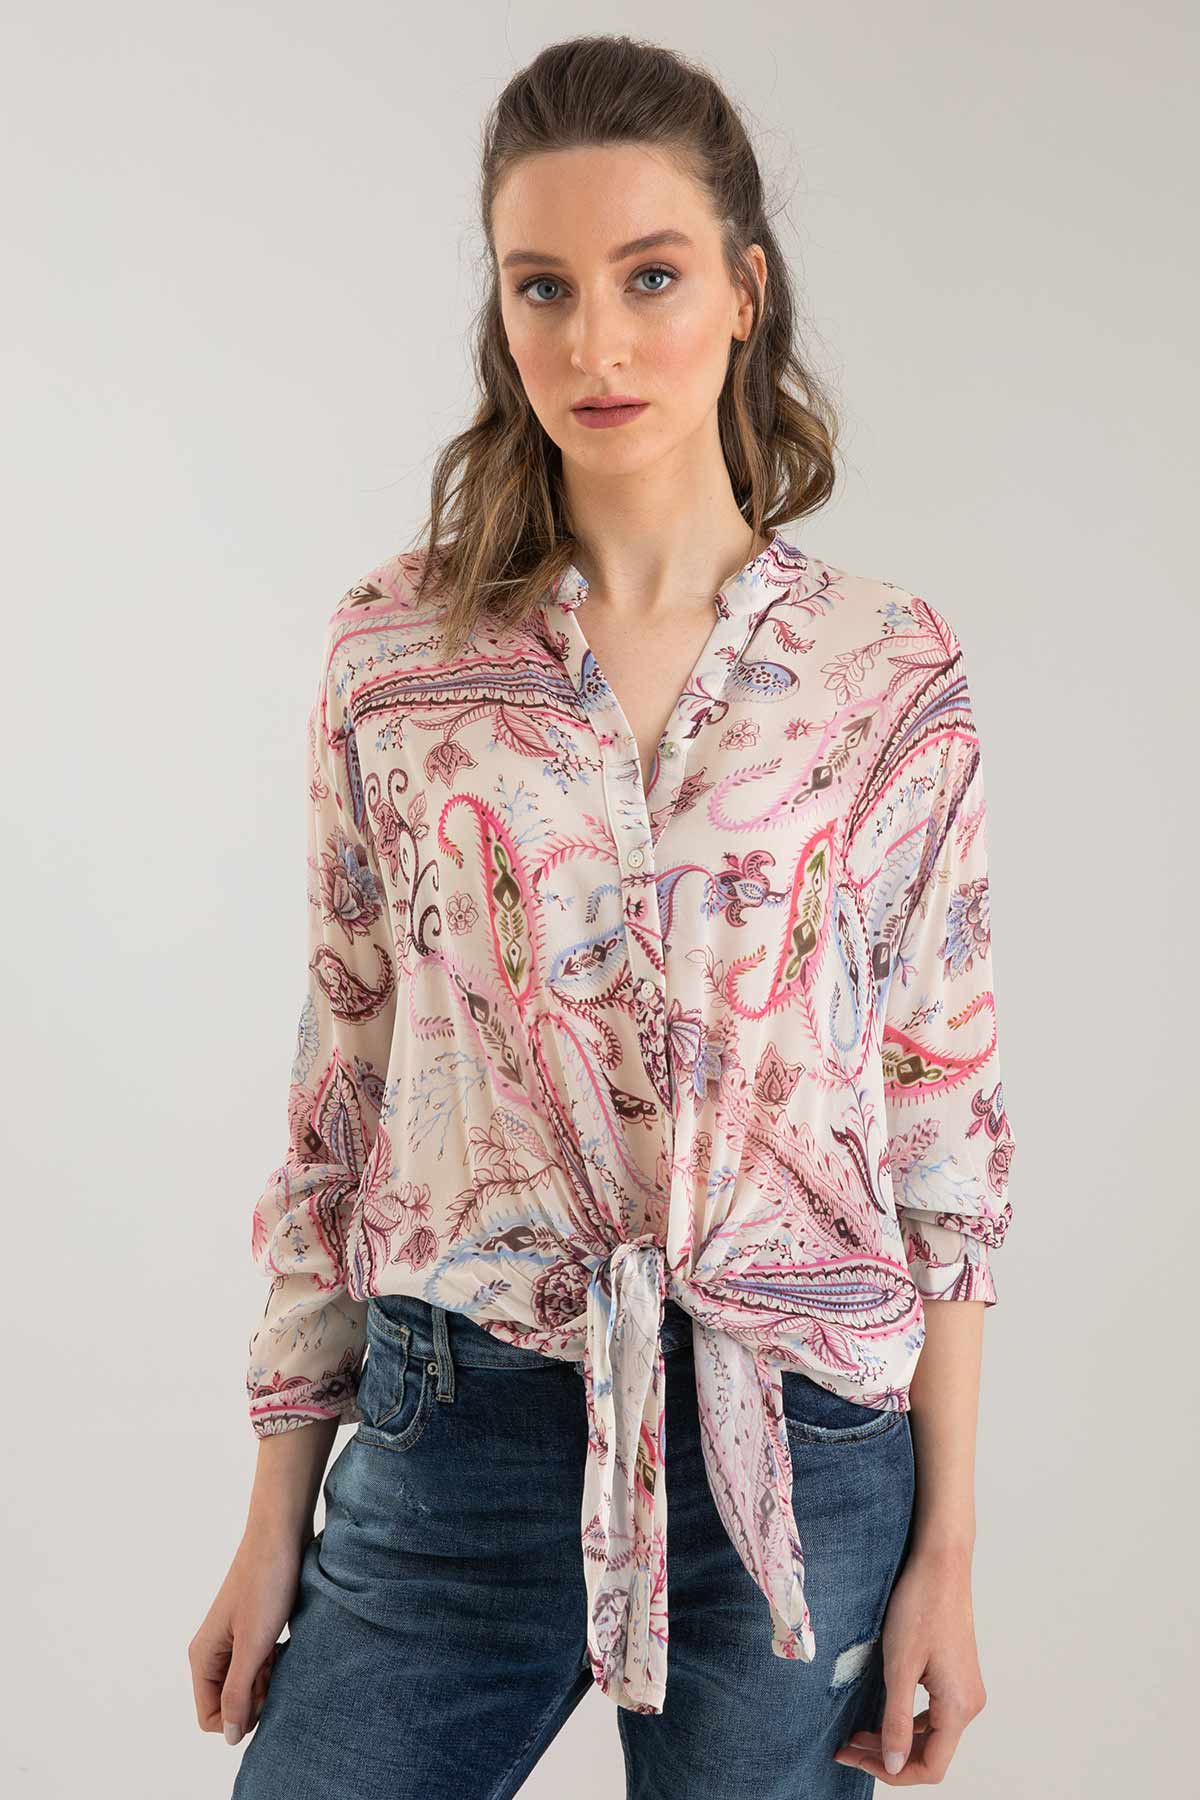 Replay Önden Bağlamalı Gömlek-Libas Trendy Fashion Store